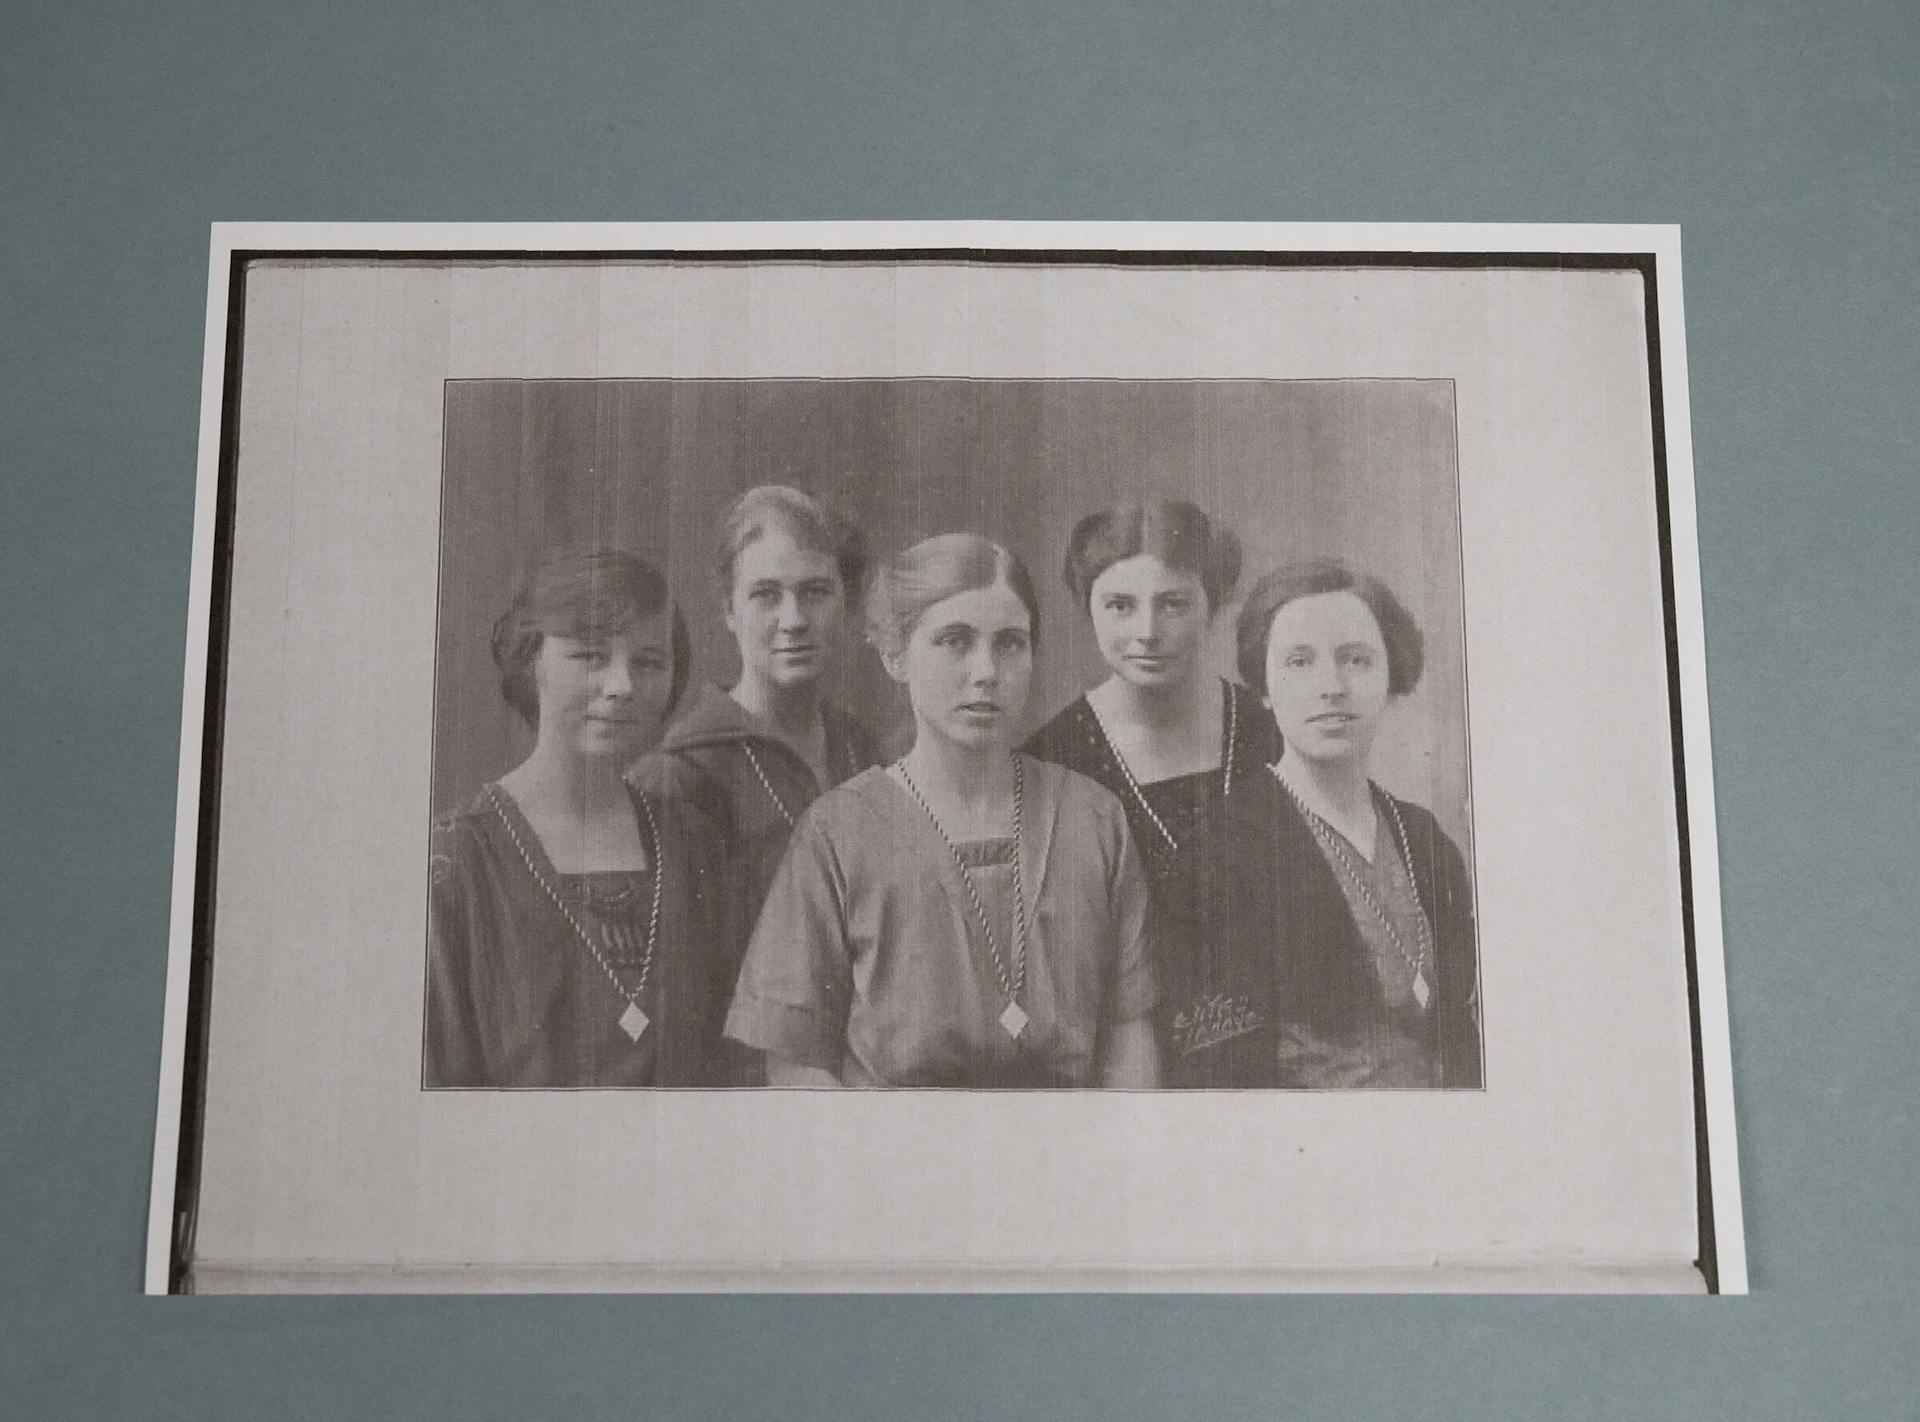 Groepsportret. G. Gratama in het midden, samen met de andere leden van de Delftse vrouwelijke studentenvereniging. Collectie Het Nieuwe Instituut. 